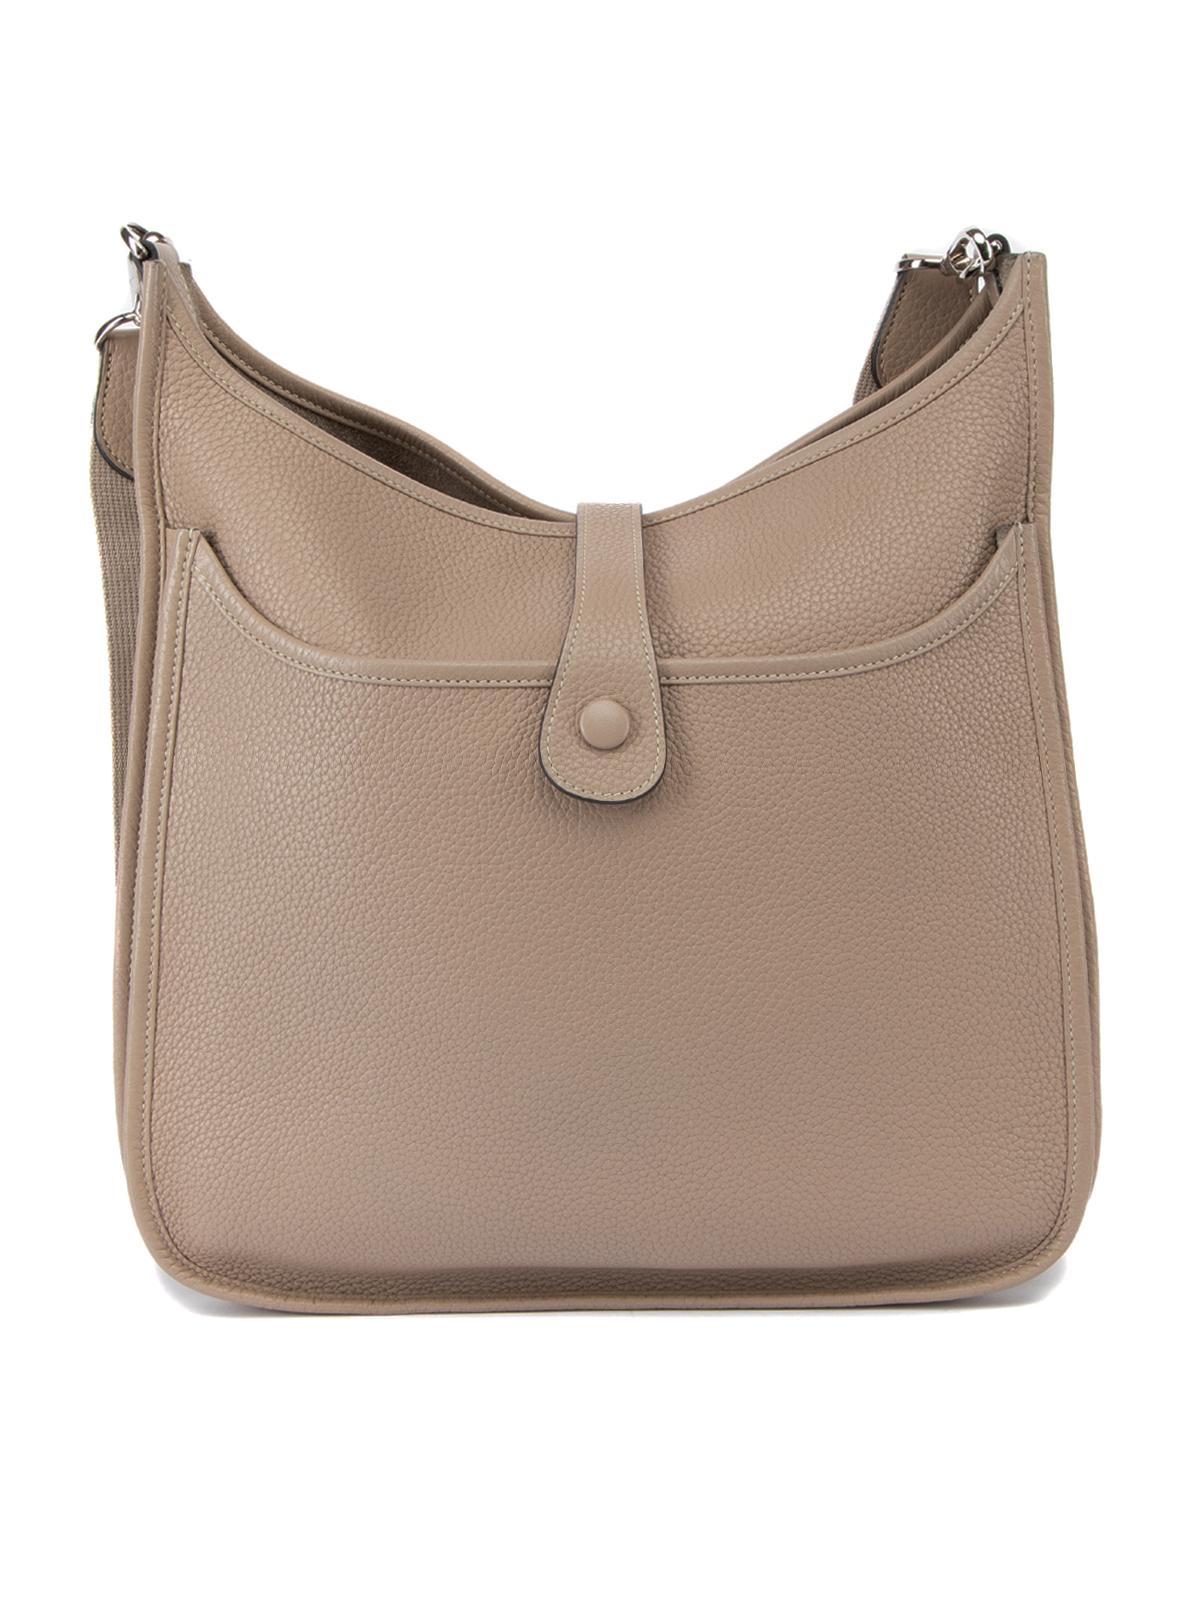 Pre-Loved Hermès Women's Beige Evelyne Bag 1